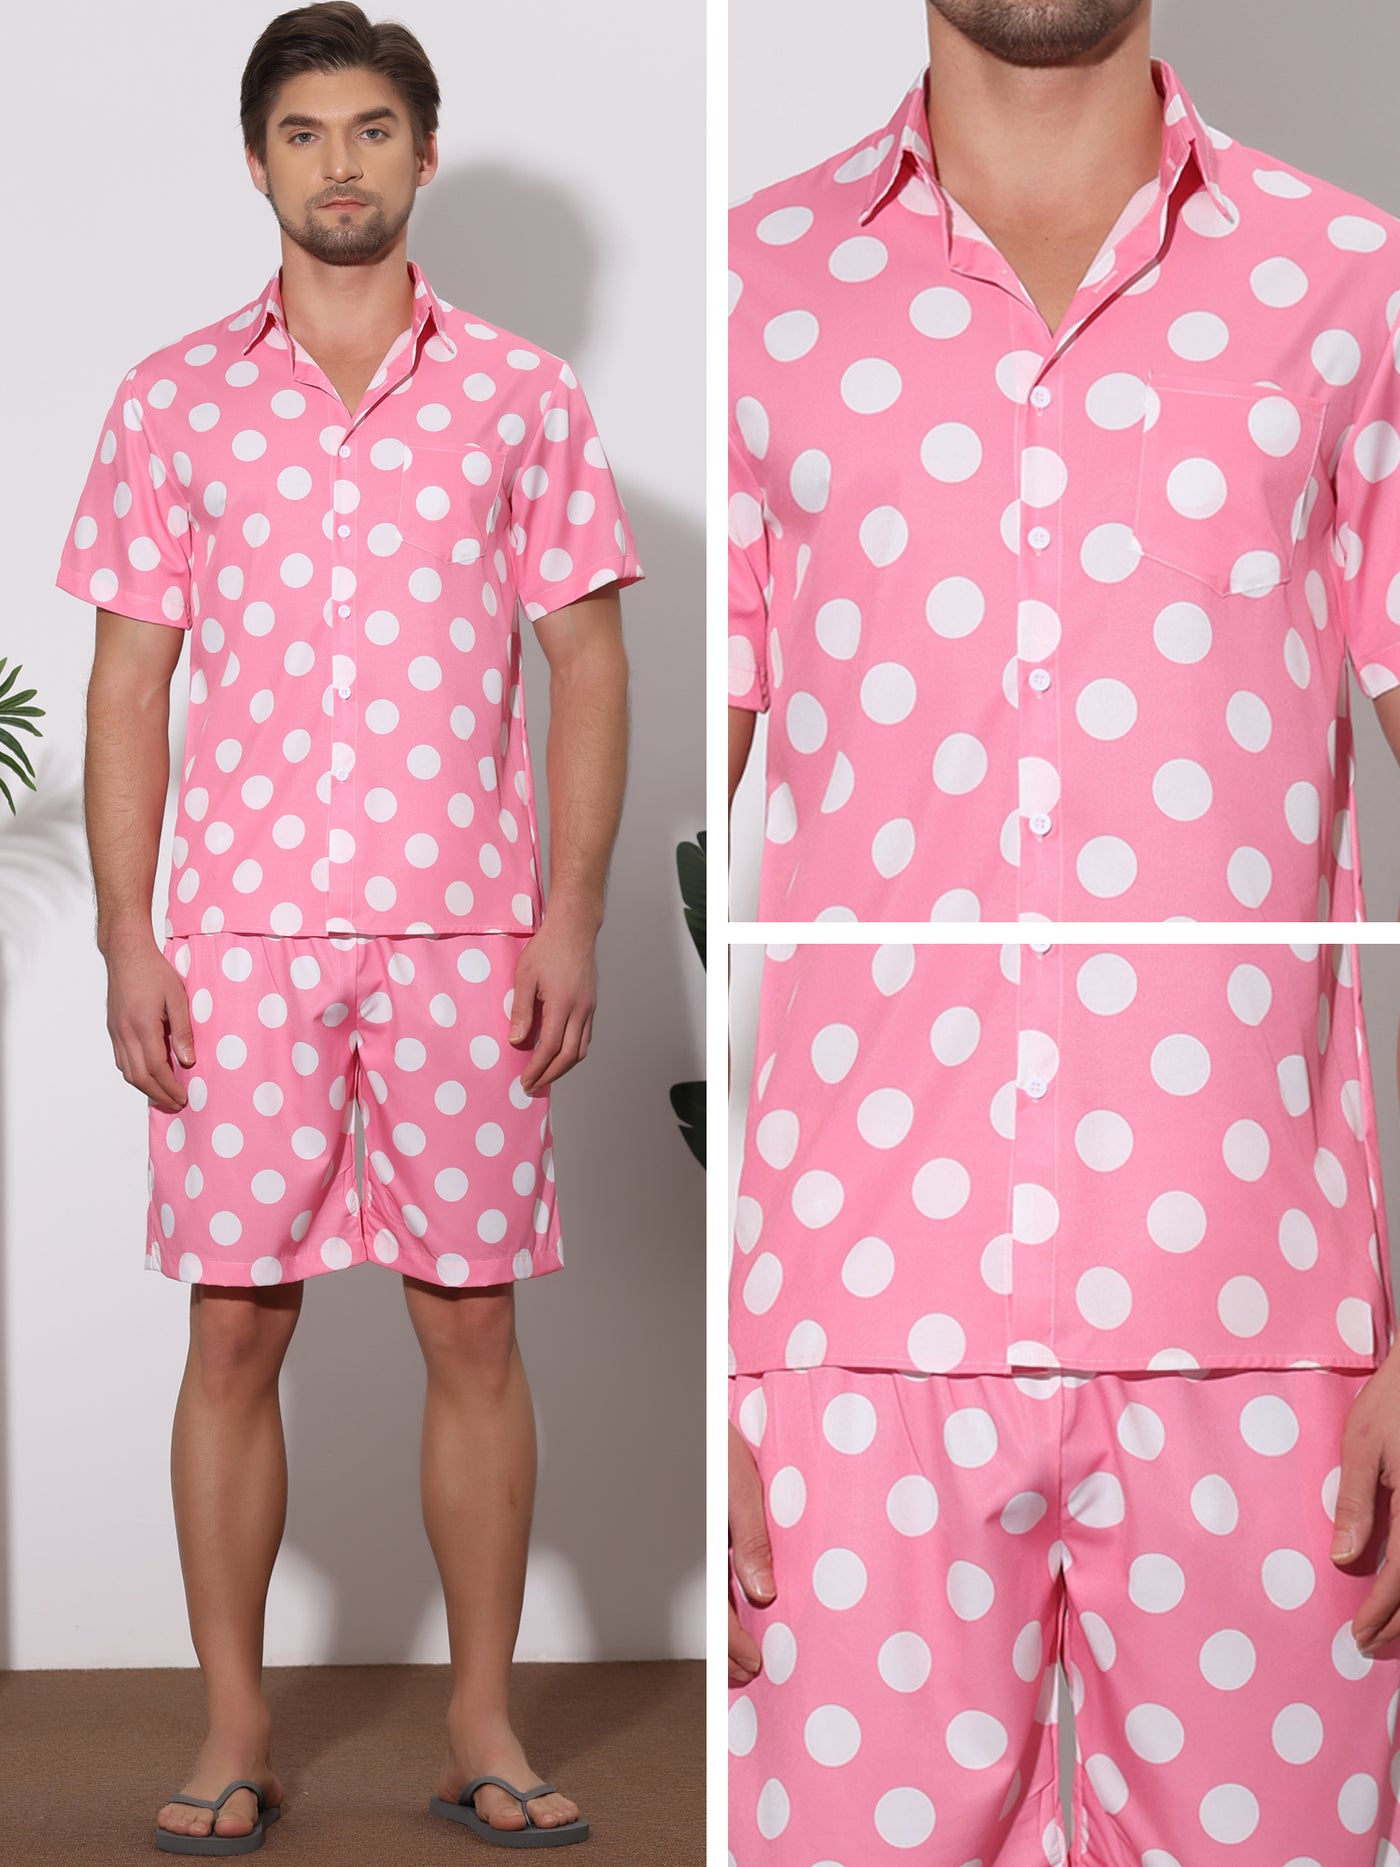 Bublédon Polka Dots Hawaiian Sets for Men's Short Sleeves Shirts Shorts Summer 2 Pieces Set